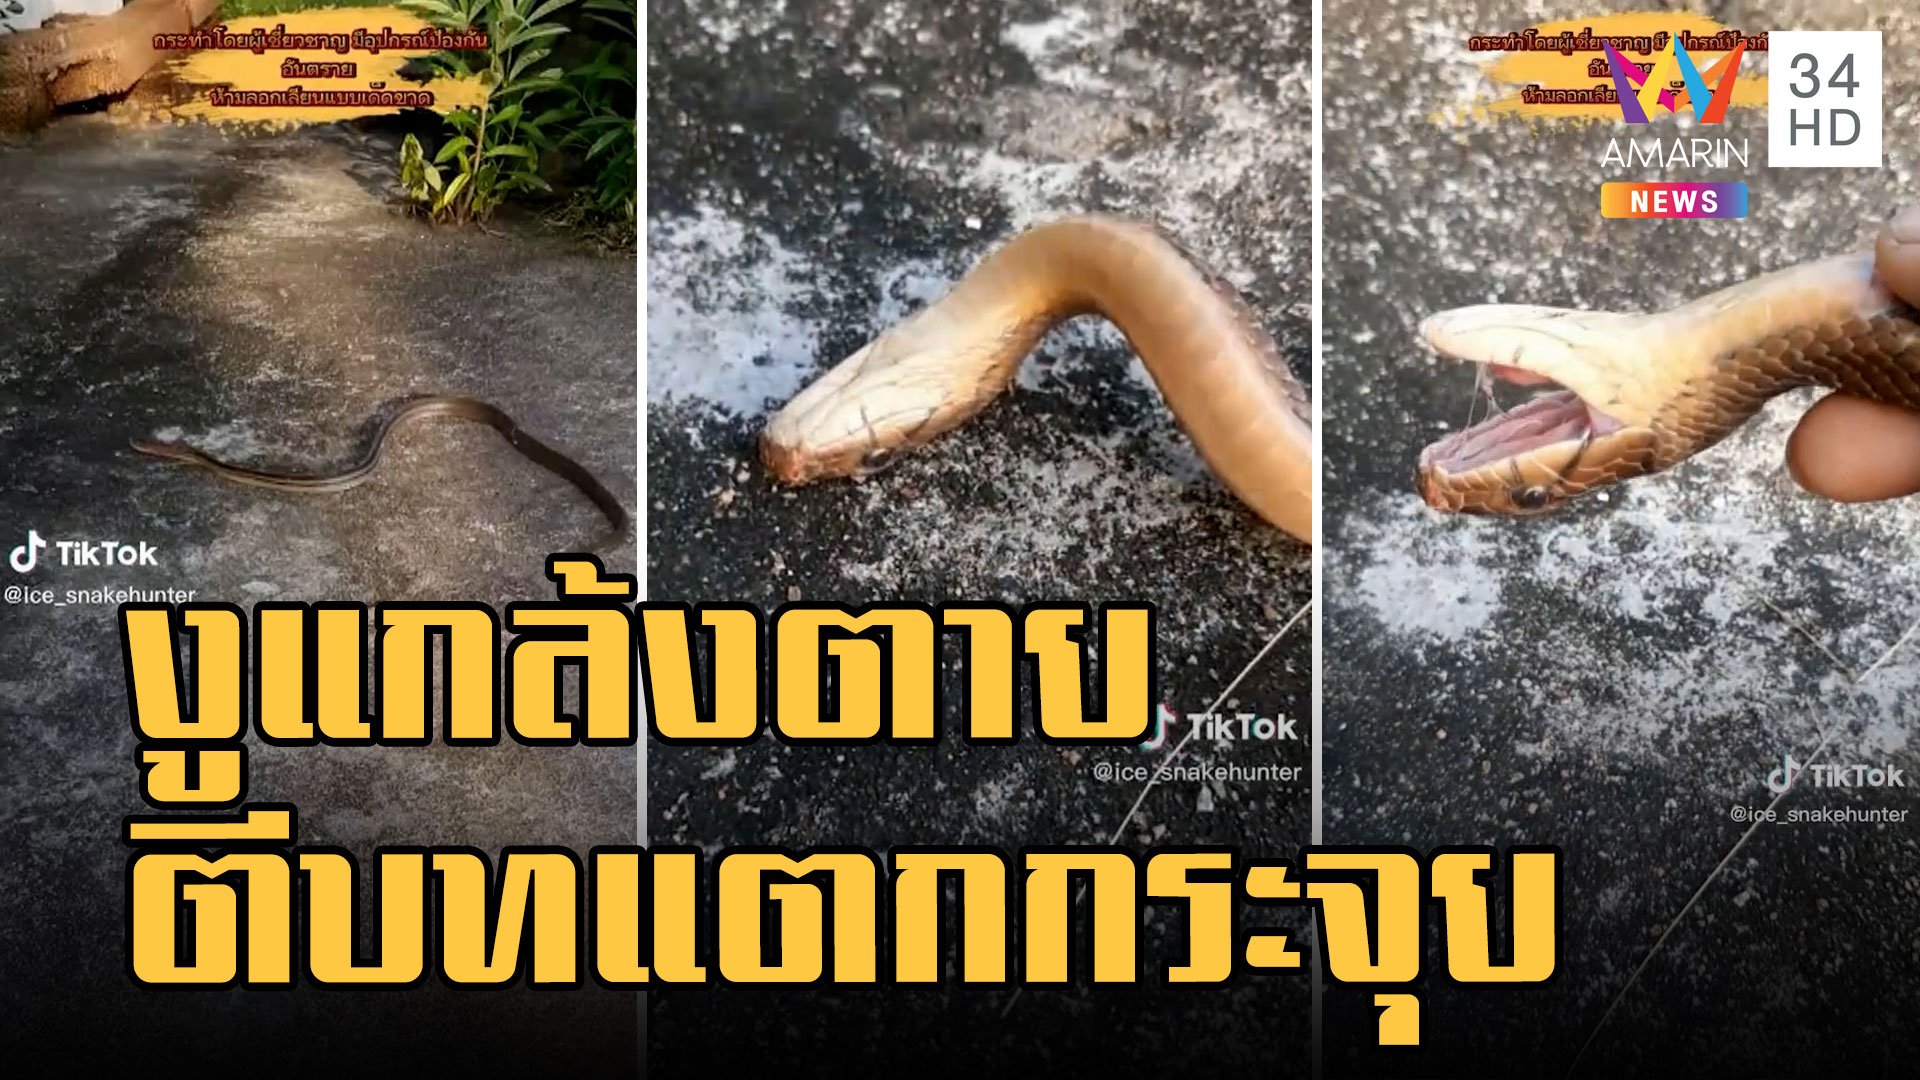 งูทางมะพร้าว ตีบทแตก! แกล้งตายกลางถนน | ข่าวอรุณอมรินทร์ | 14 พ.ย. 65 | AMARIN TVHD34